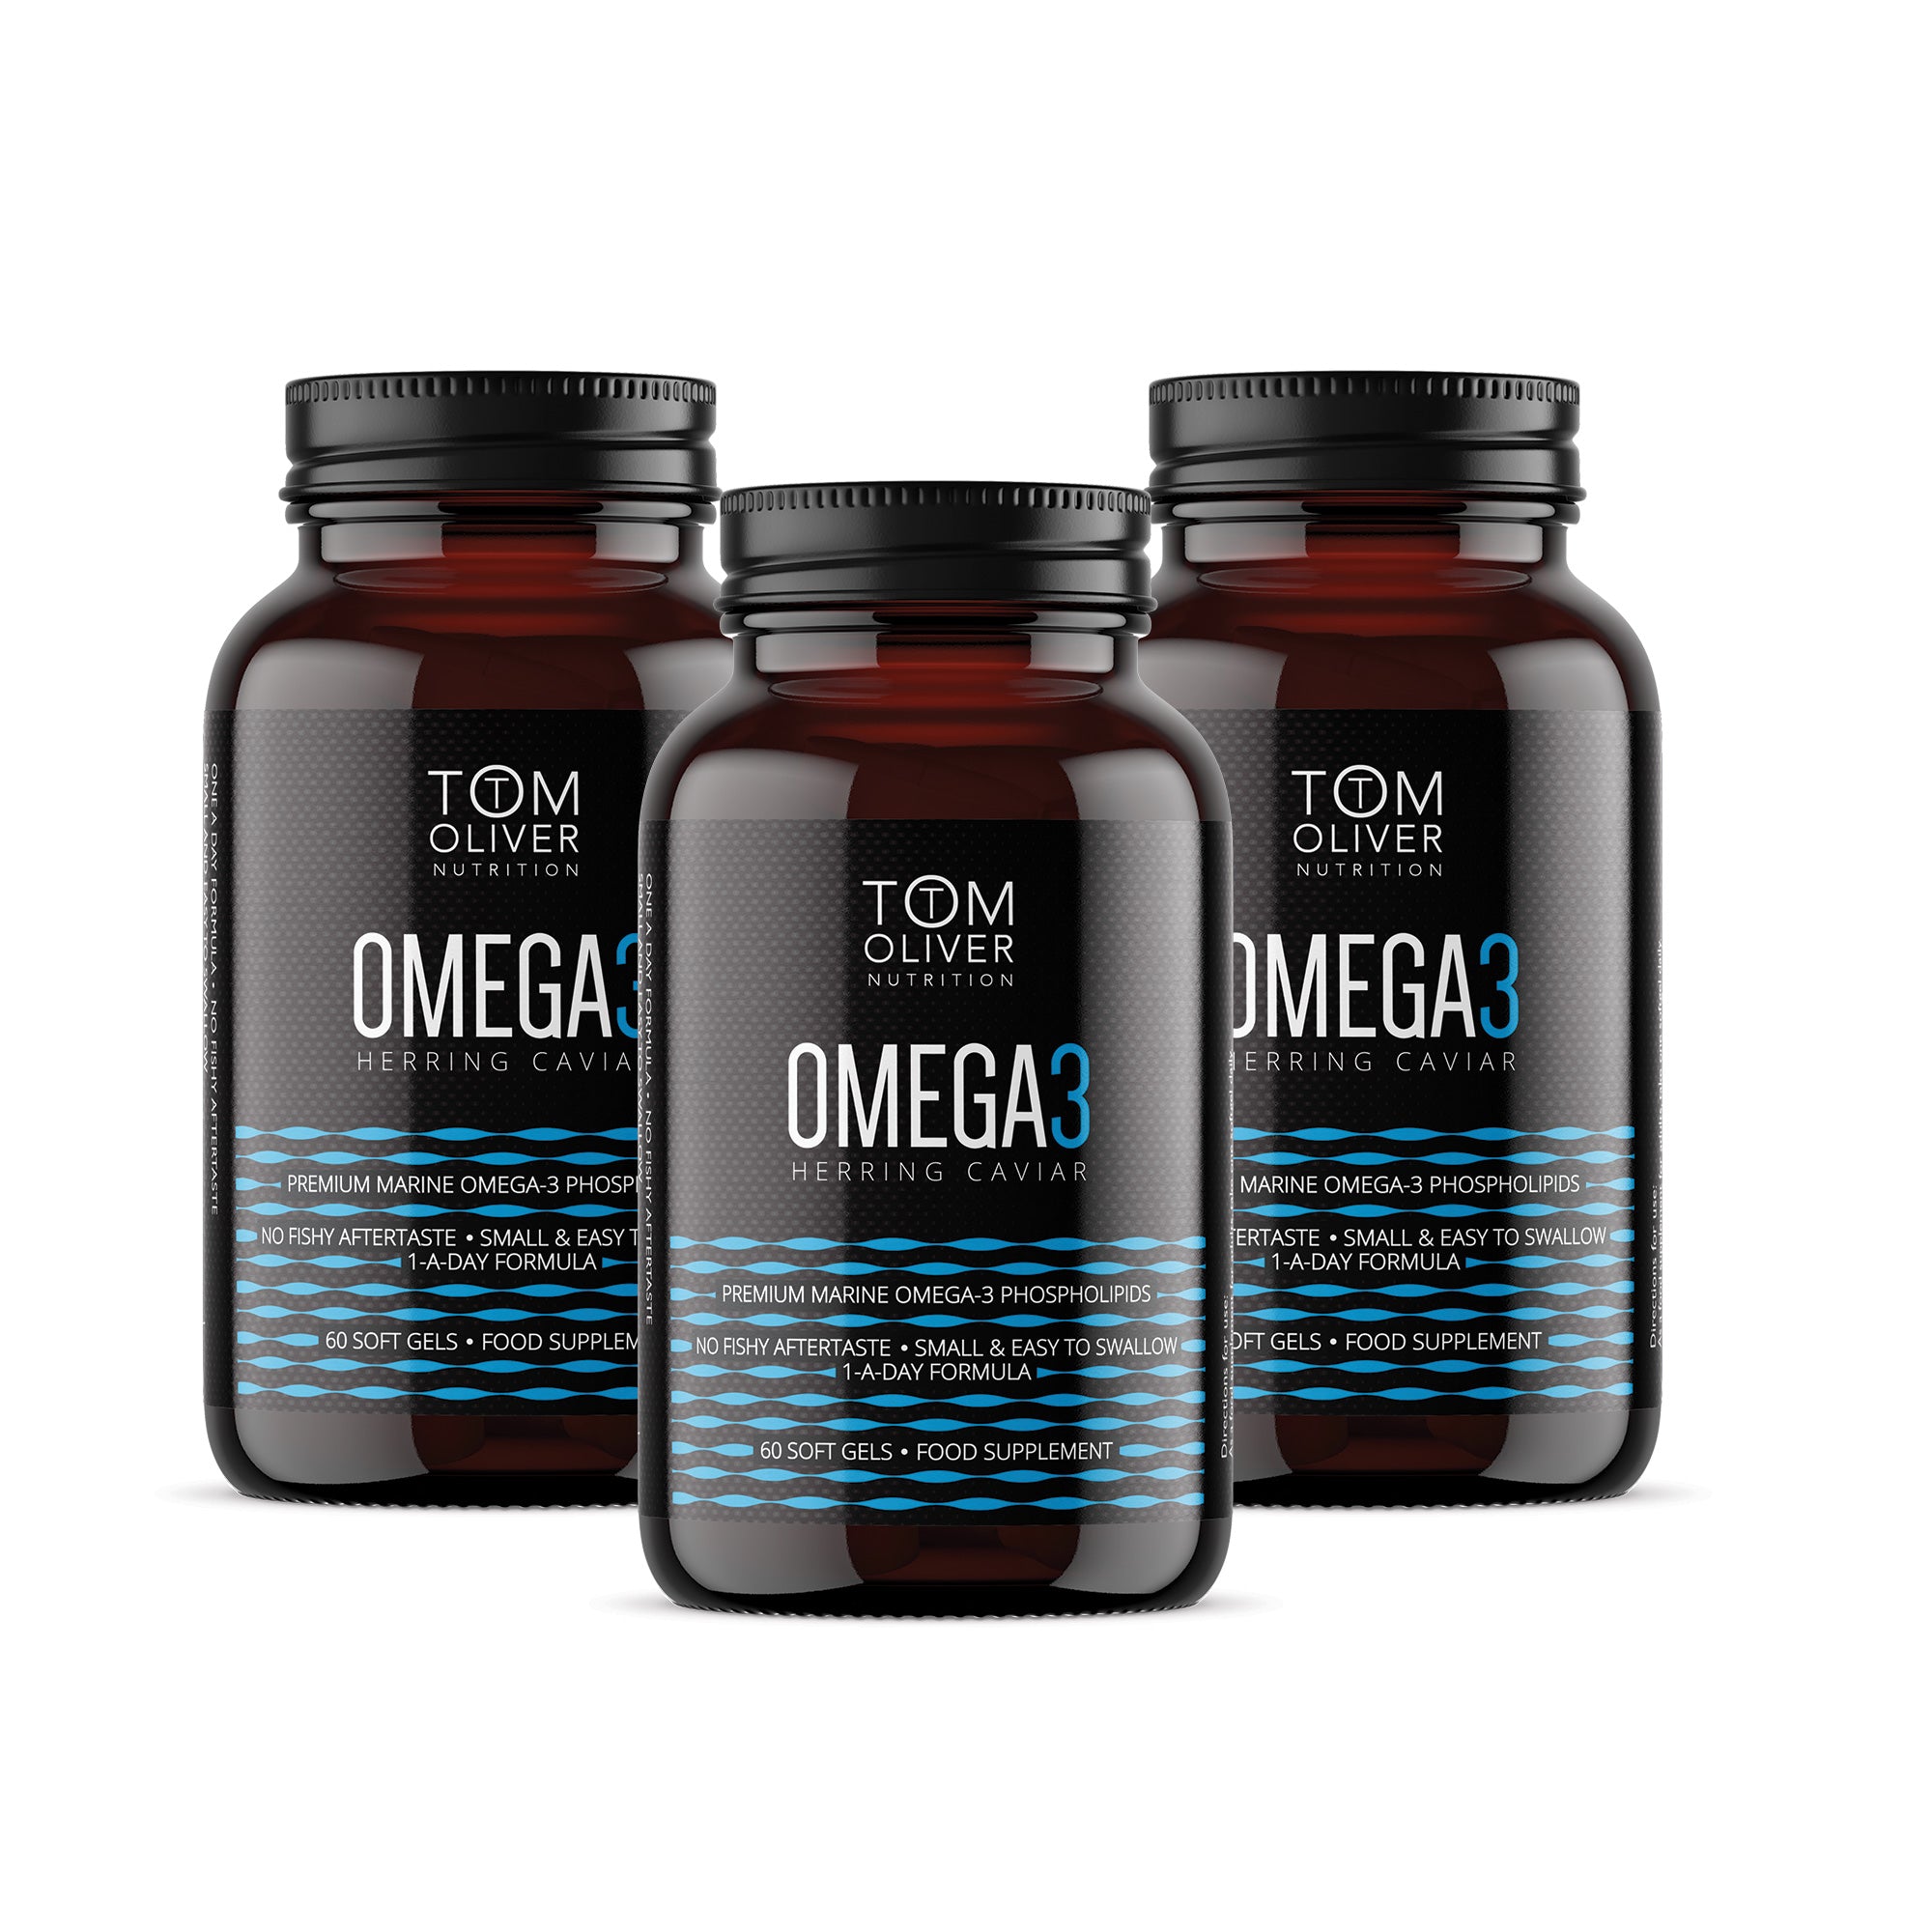 The Omega 3 Herring Caviar Offer Pack (3 Bottles)